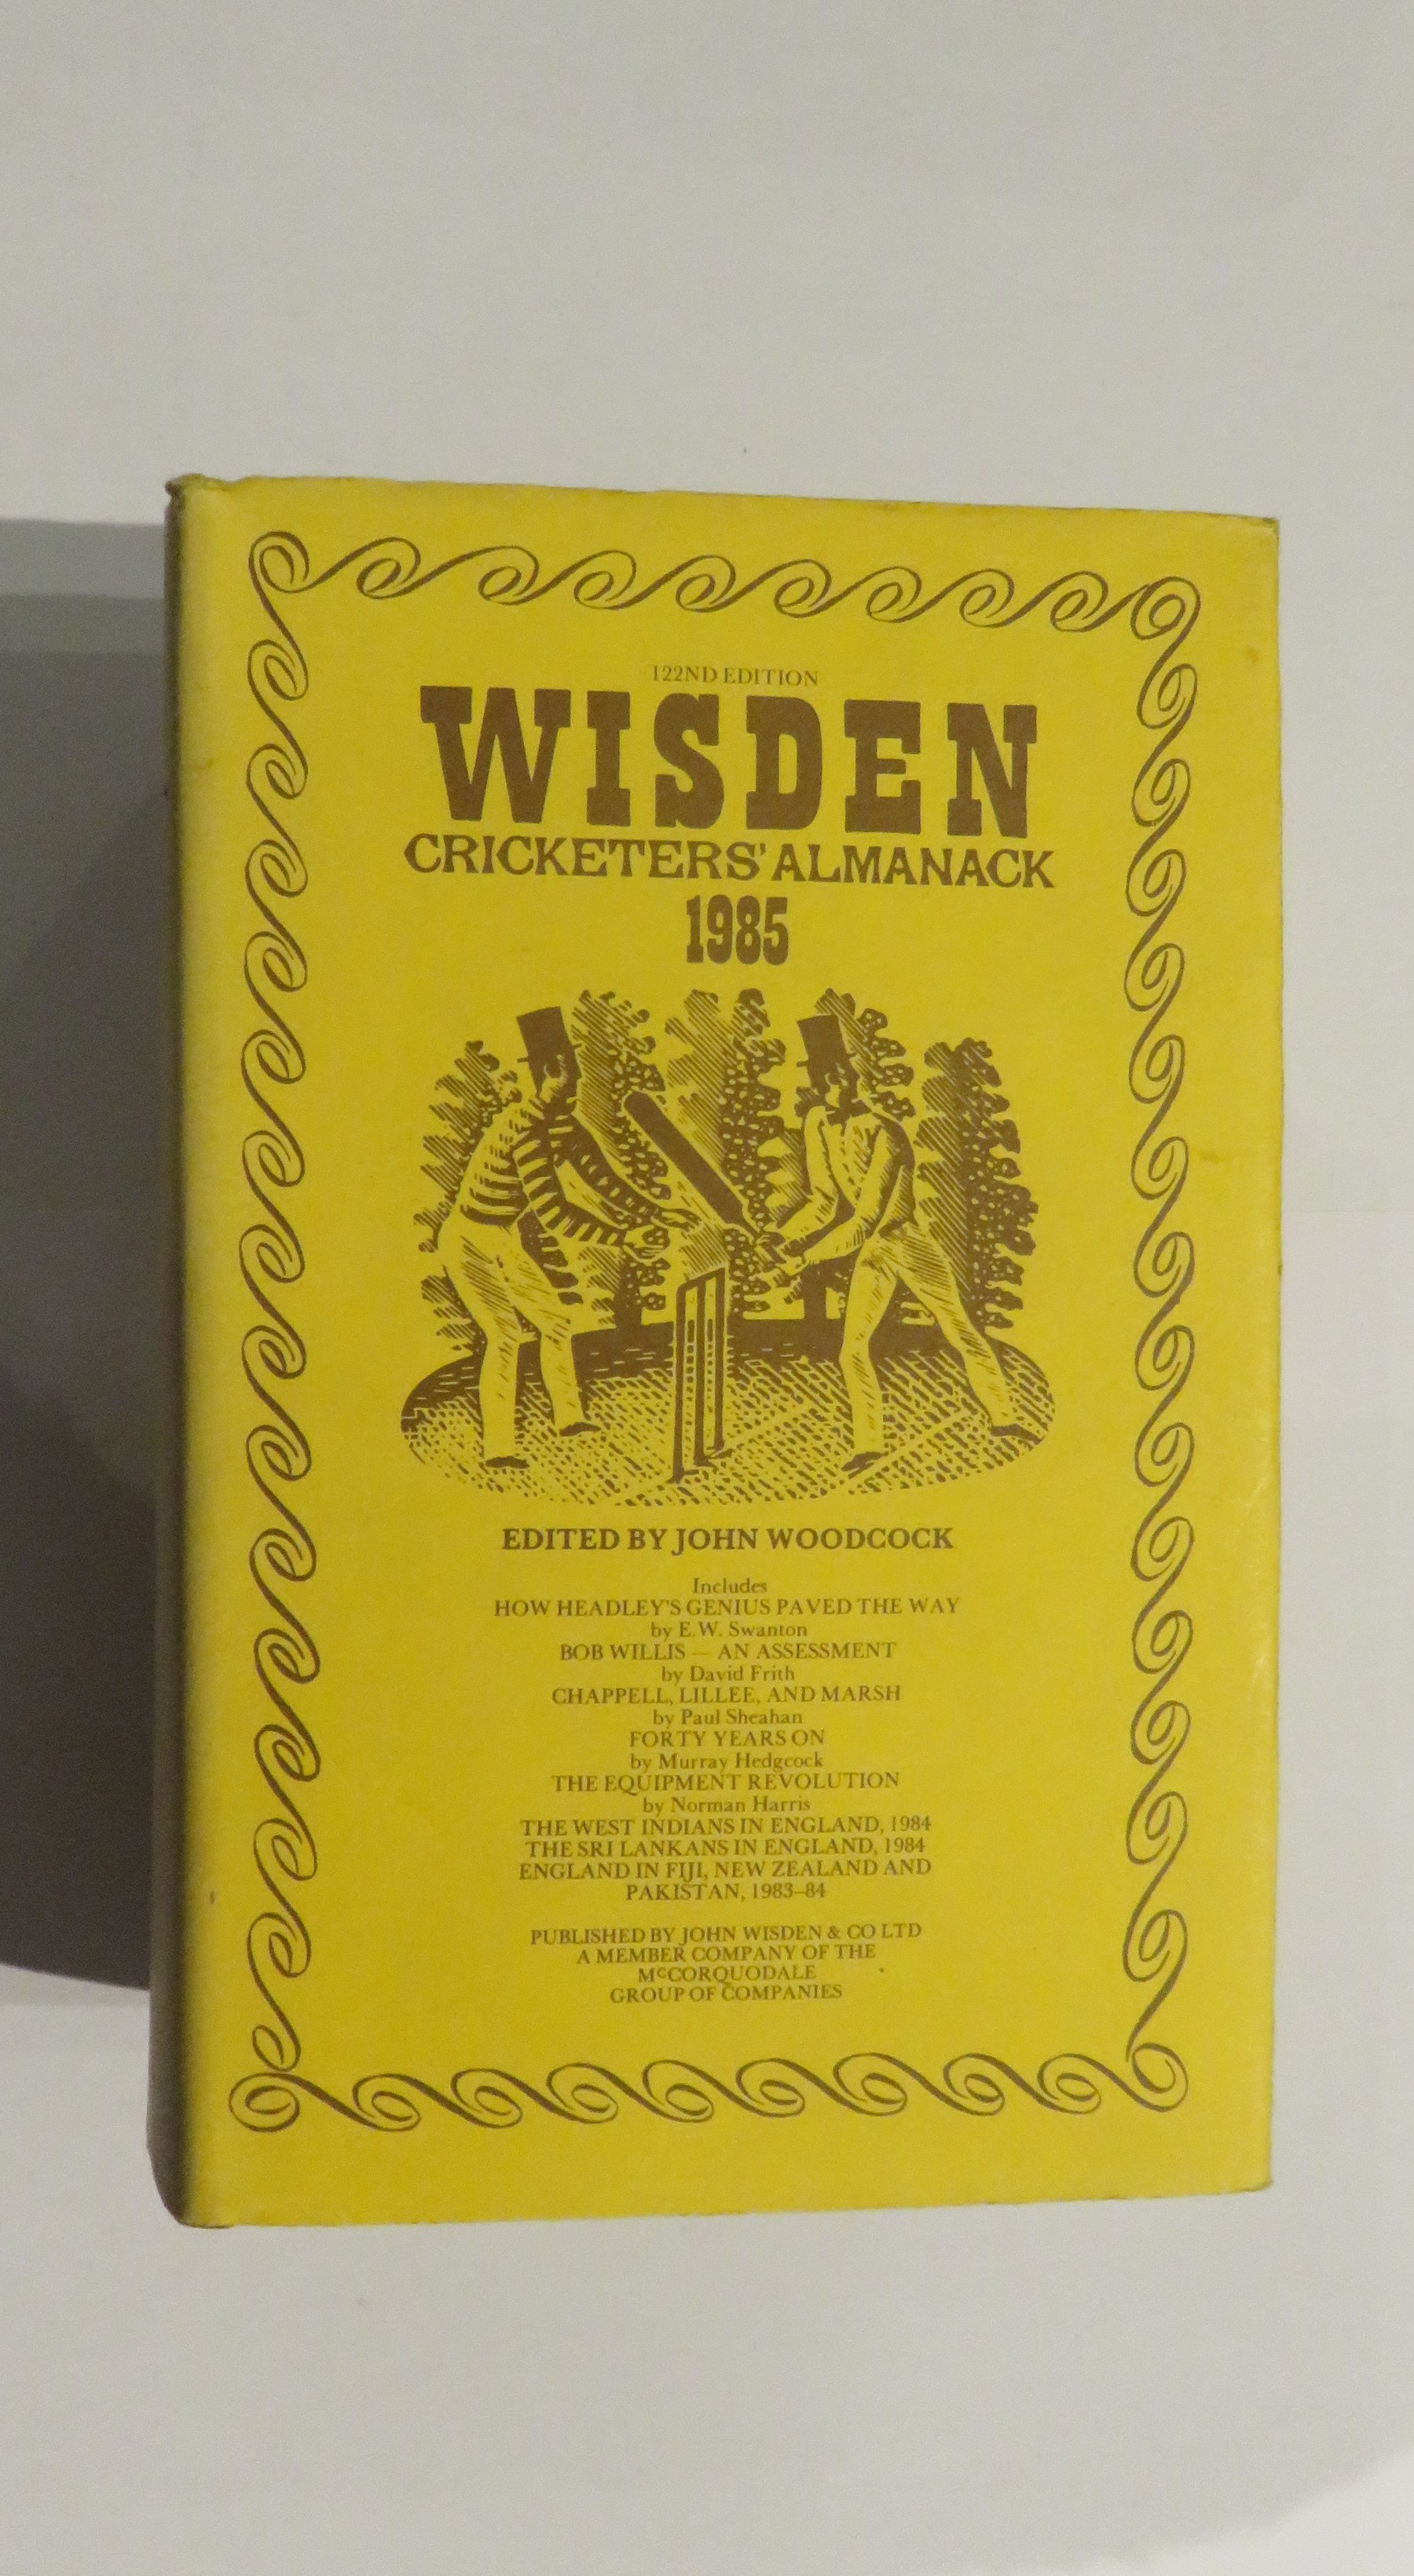 Wisden Cricketers' Almanack 1985